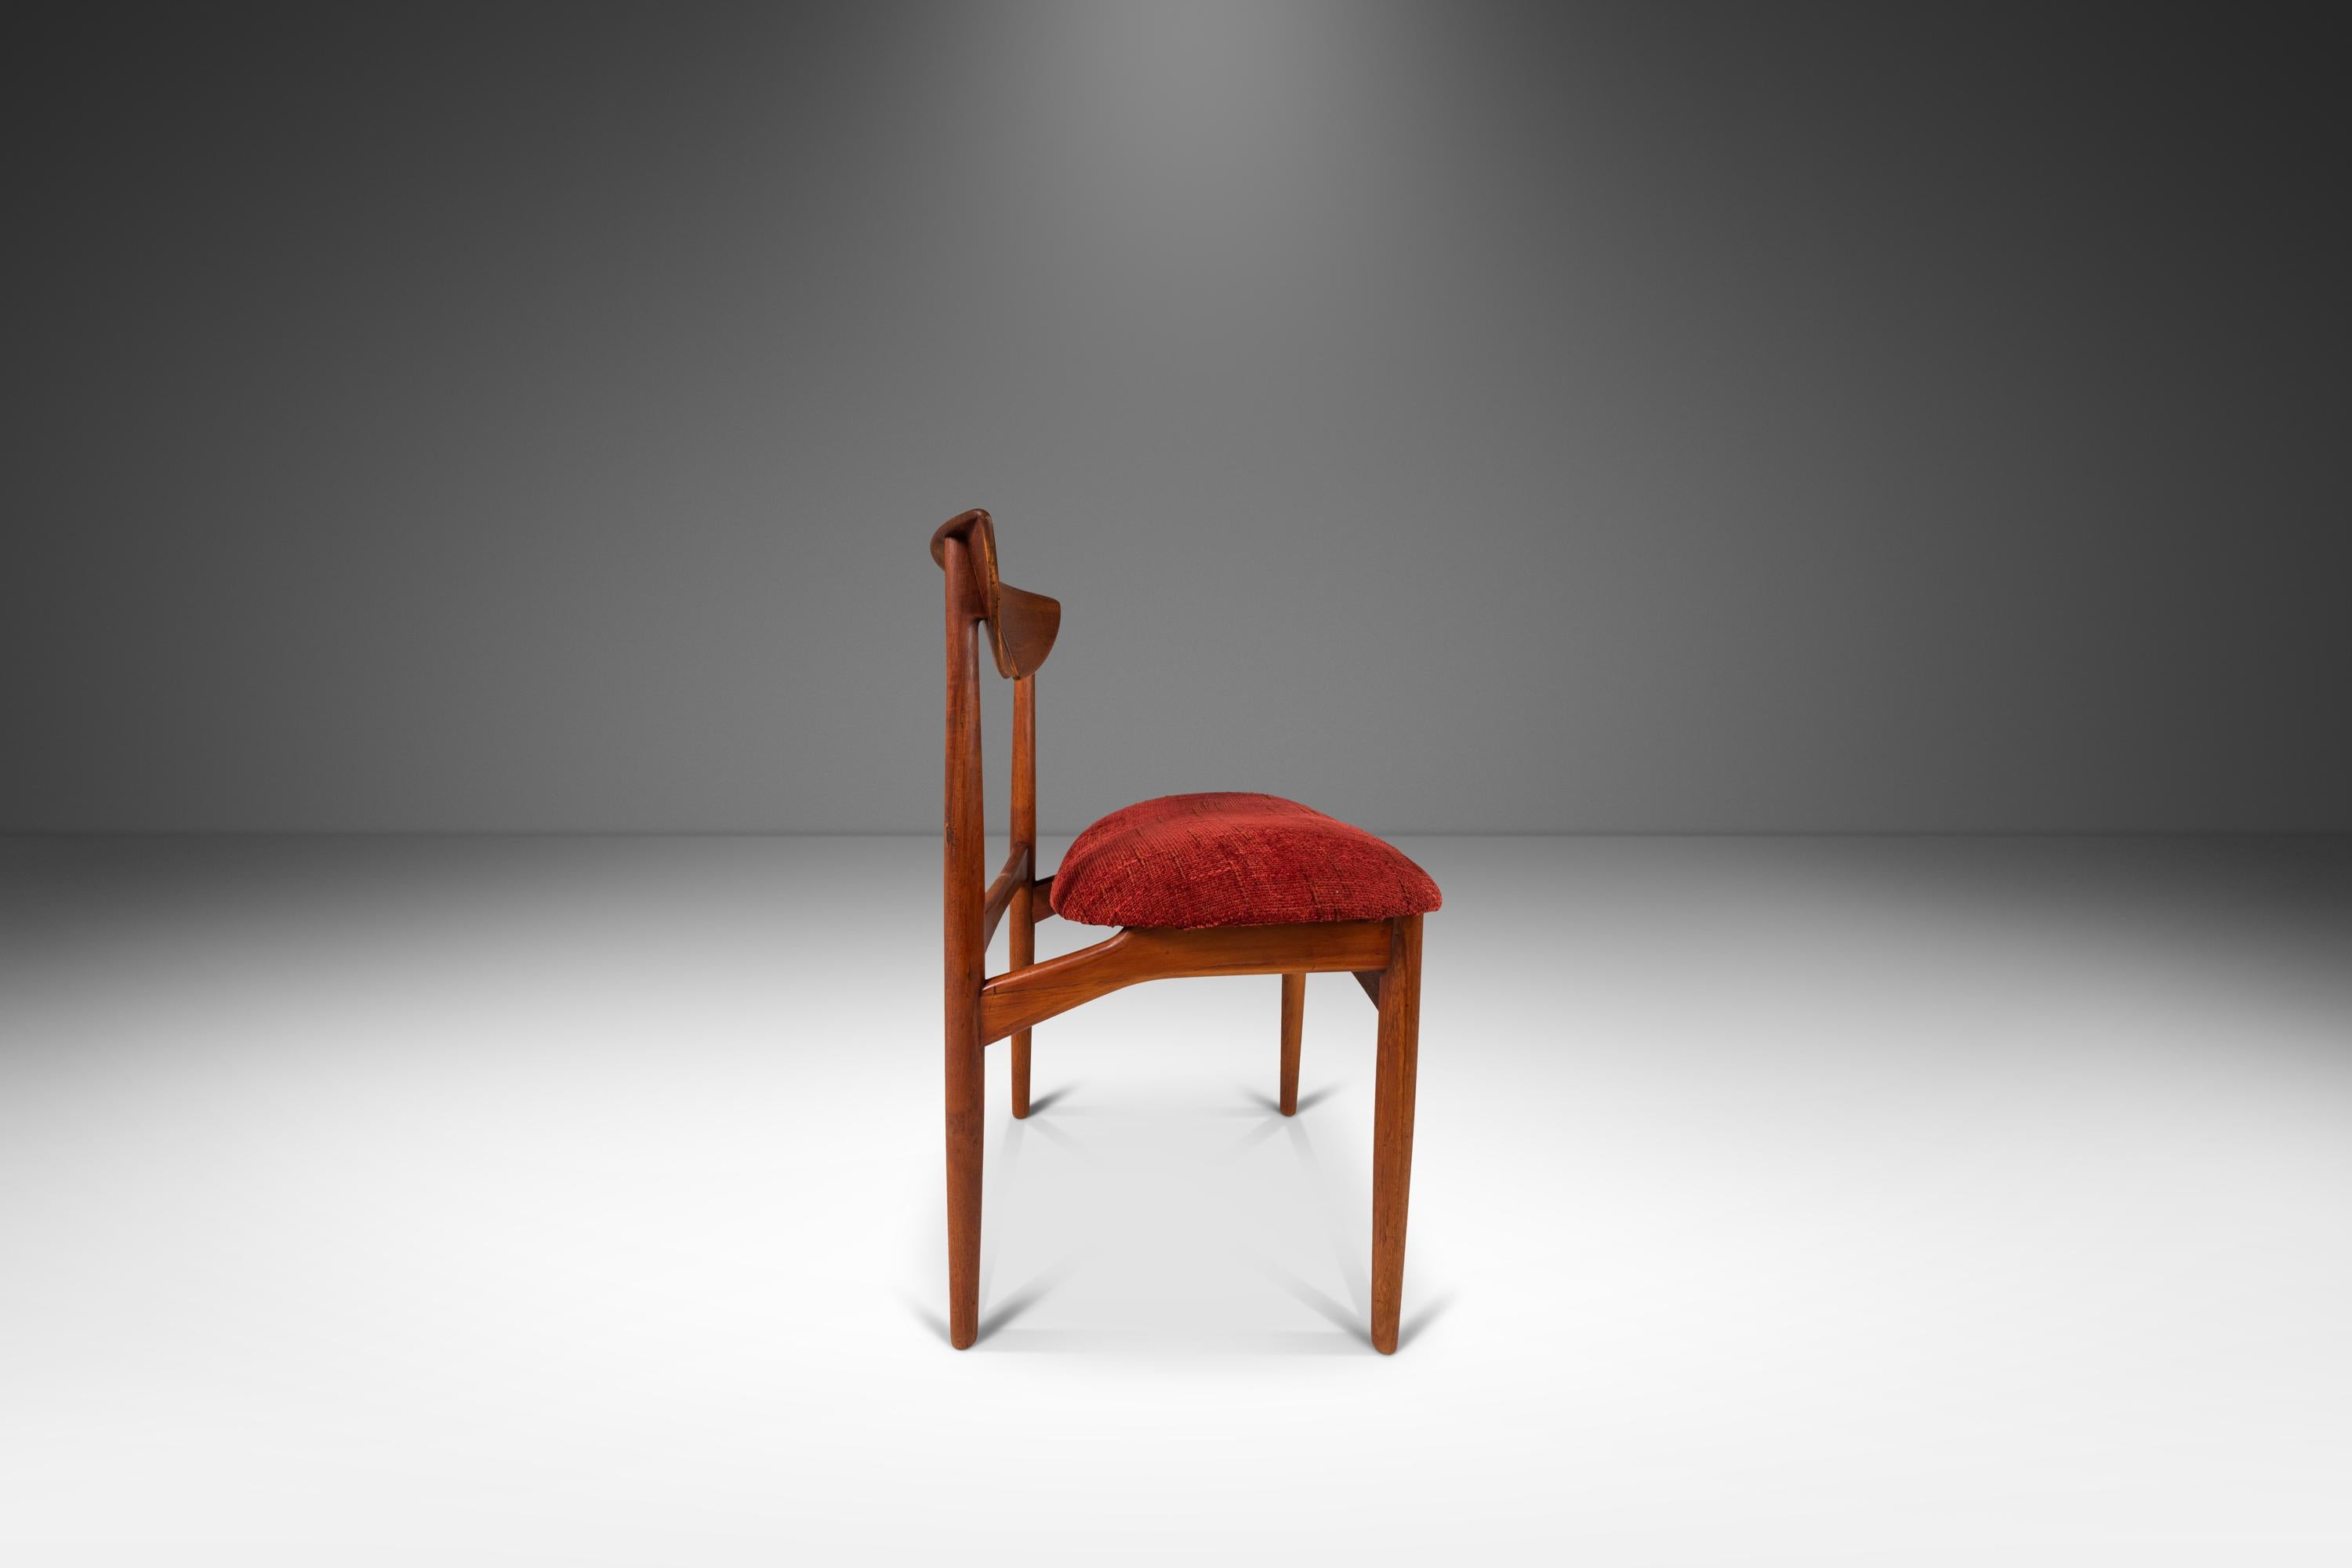 Voici une rare chaise latérale/de bureau en teck de Kurt Østervig pour International Designers, fabriquée dans les années 1960 au Danemark. Cette chaise désormais emblématique est construite en teck massif de Birmanie, mettant en valeur la beauté